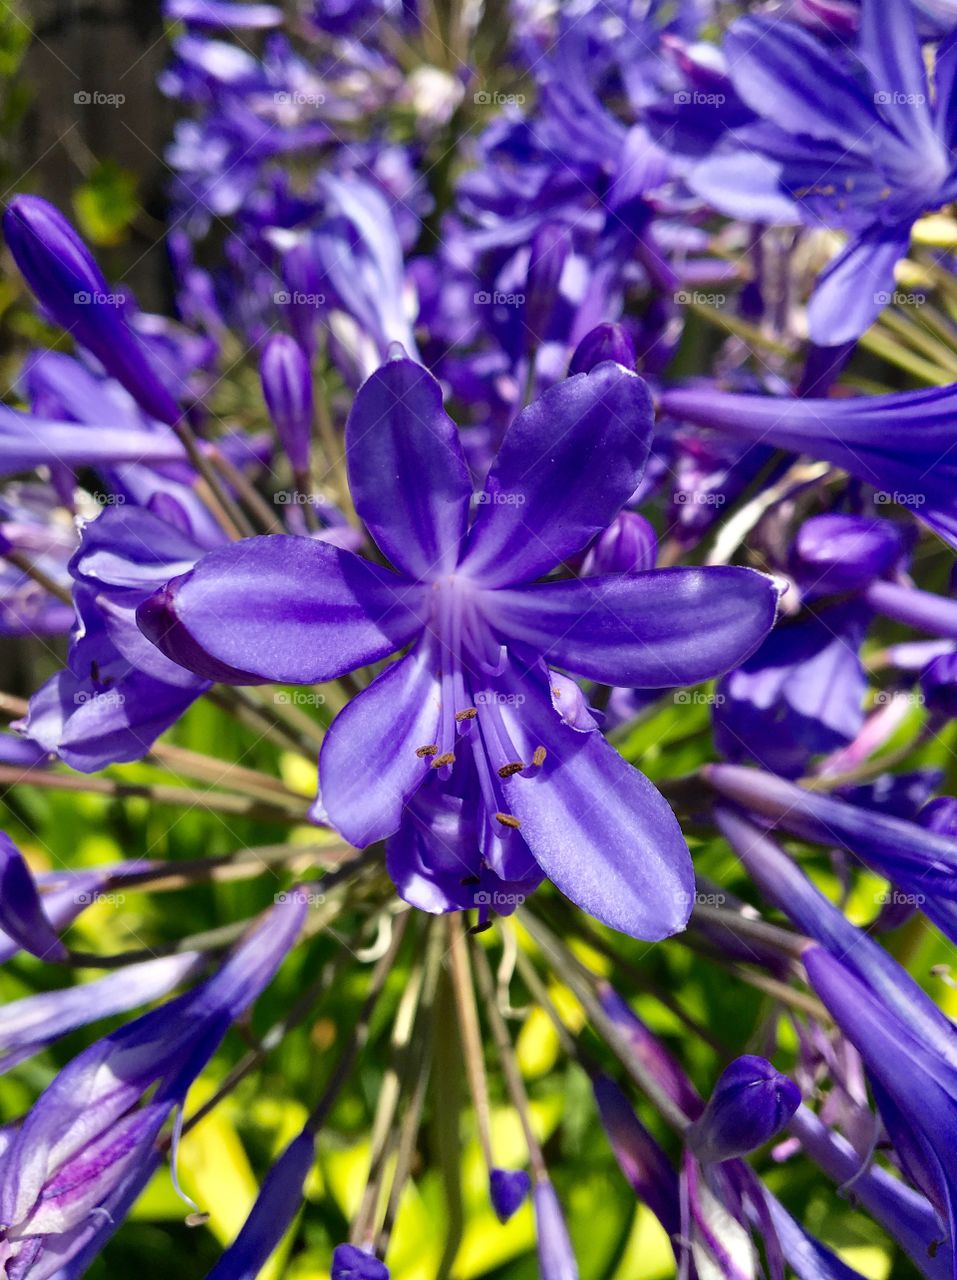 Vivid purple flowers